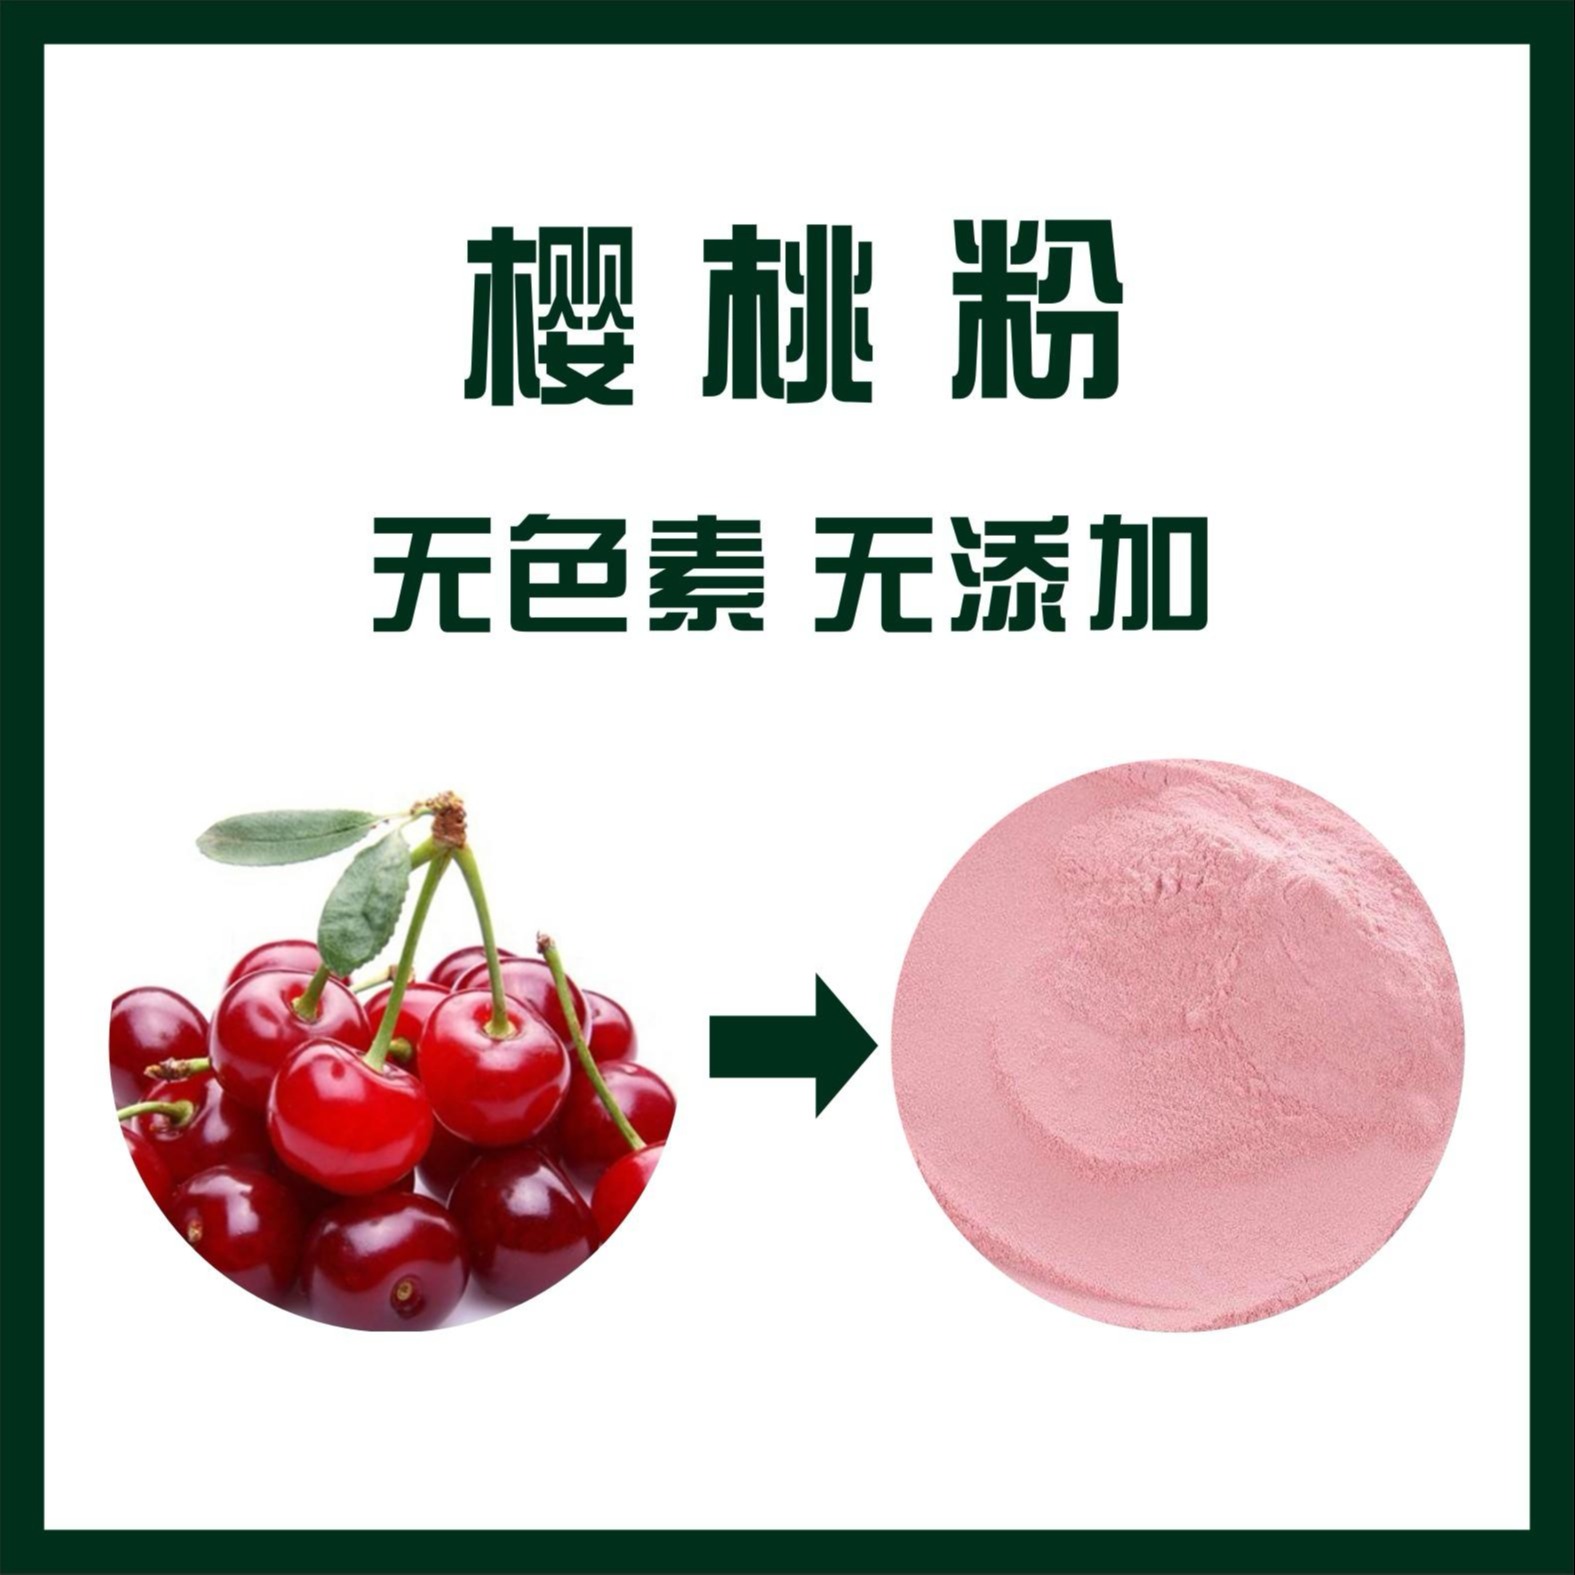 樱桃粉,Cherry powder